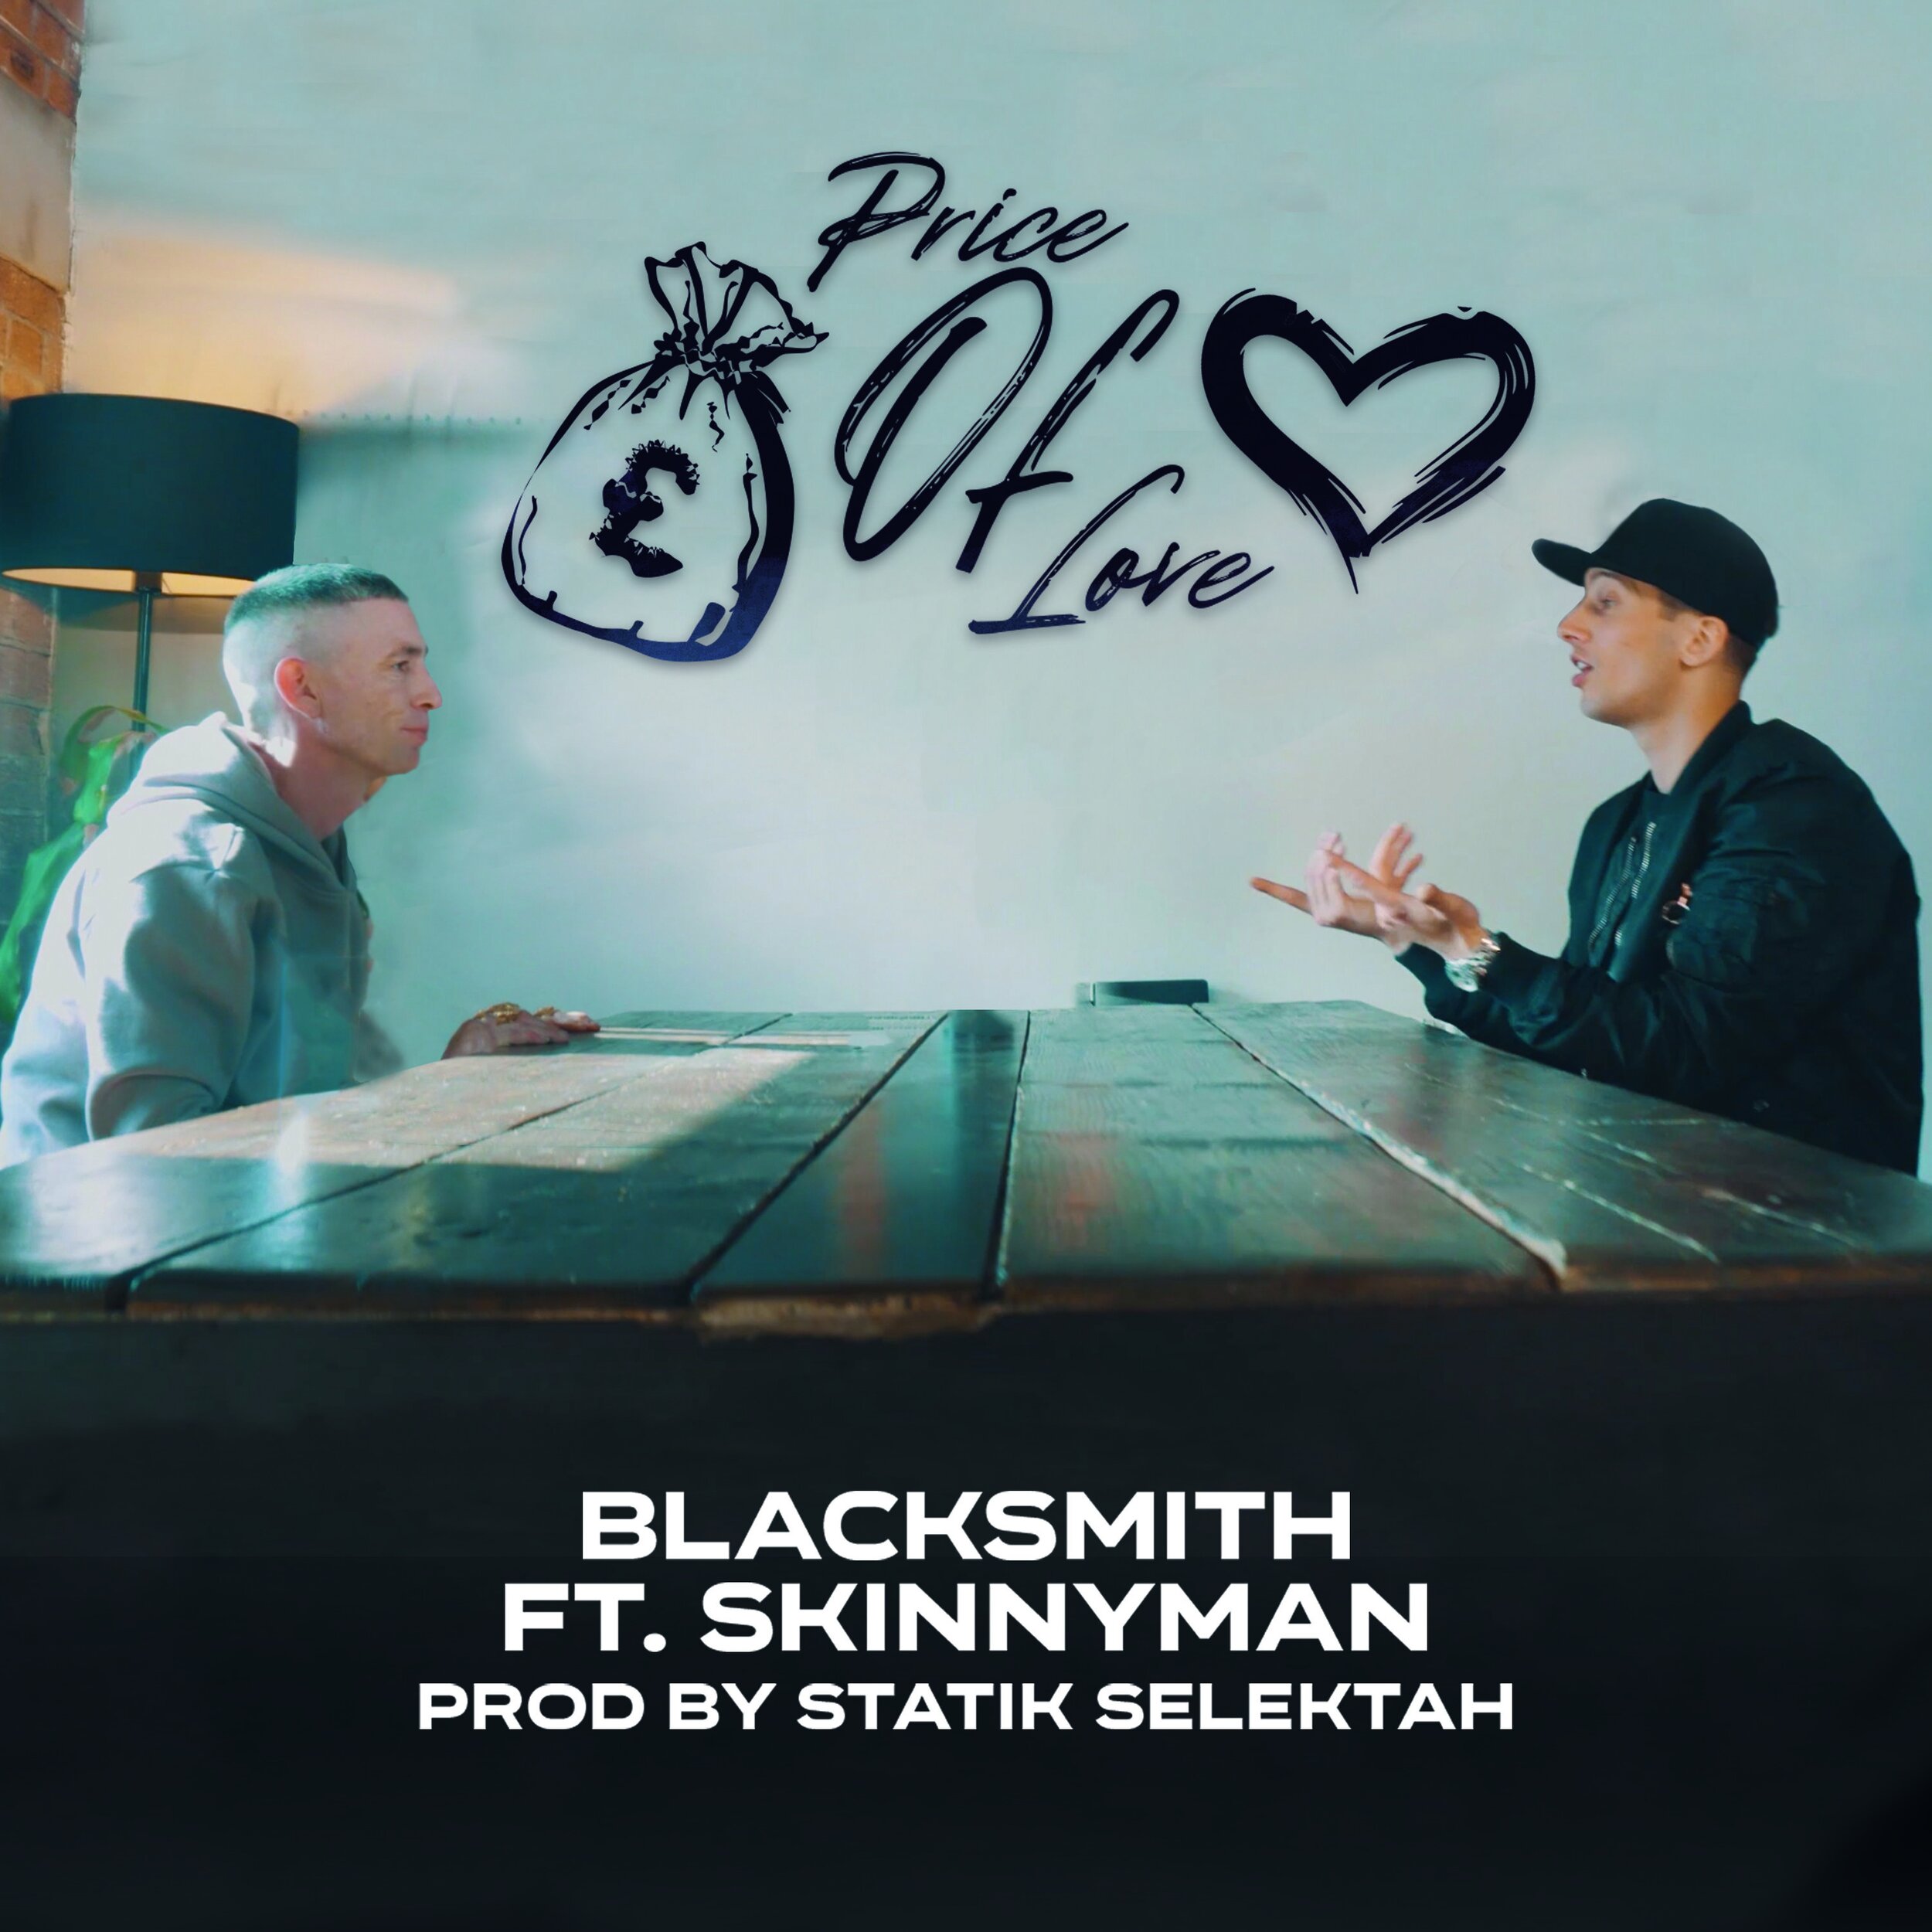 Blacksmith Drops "Price Of Love"